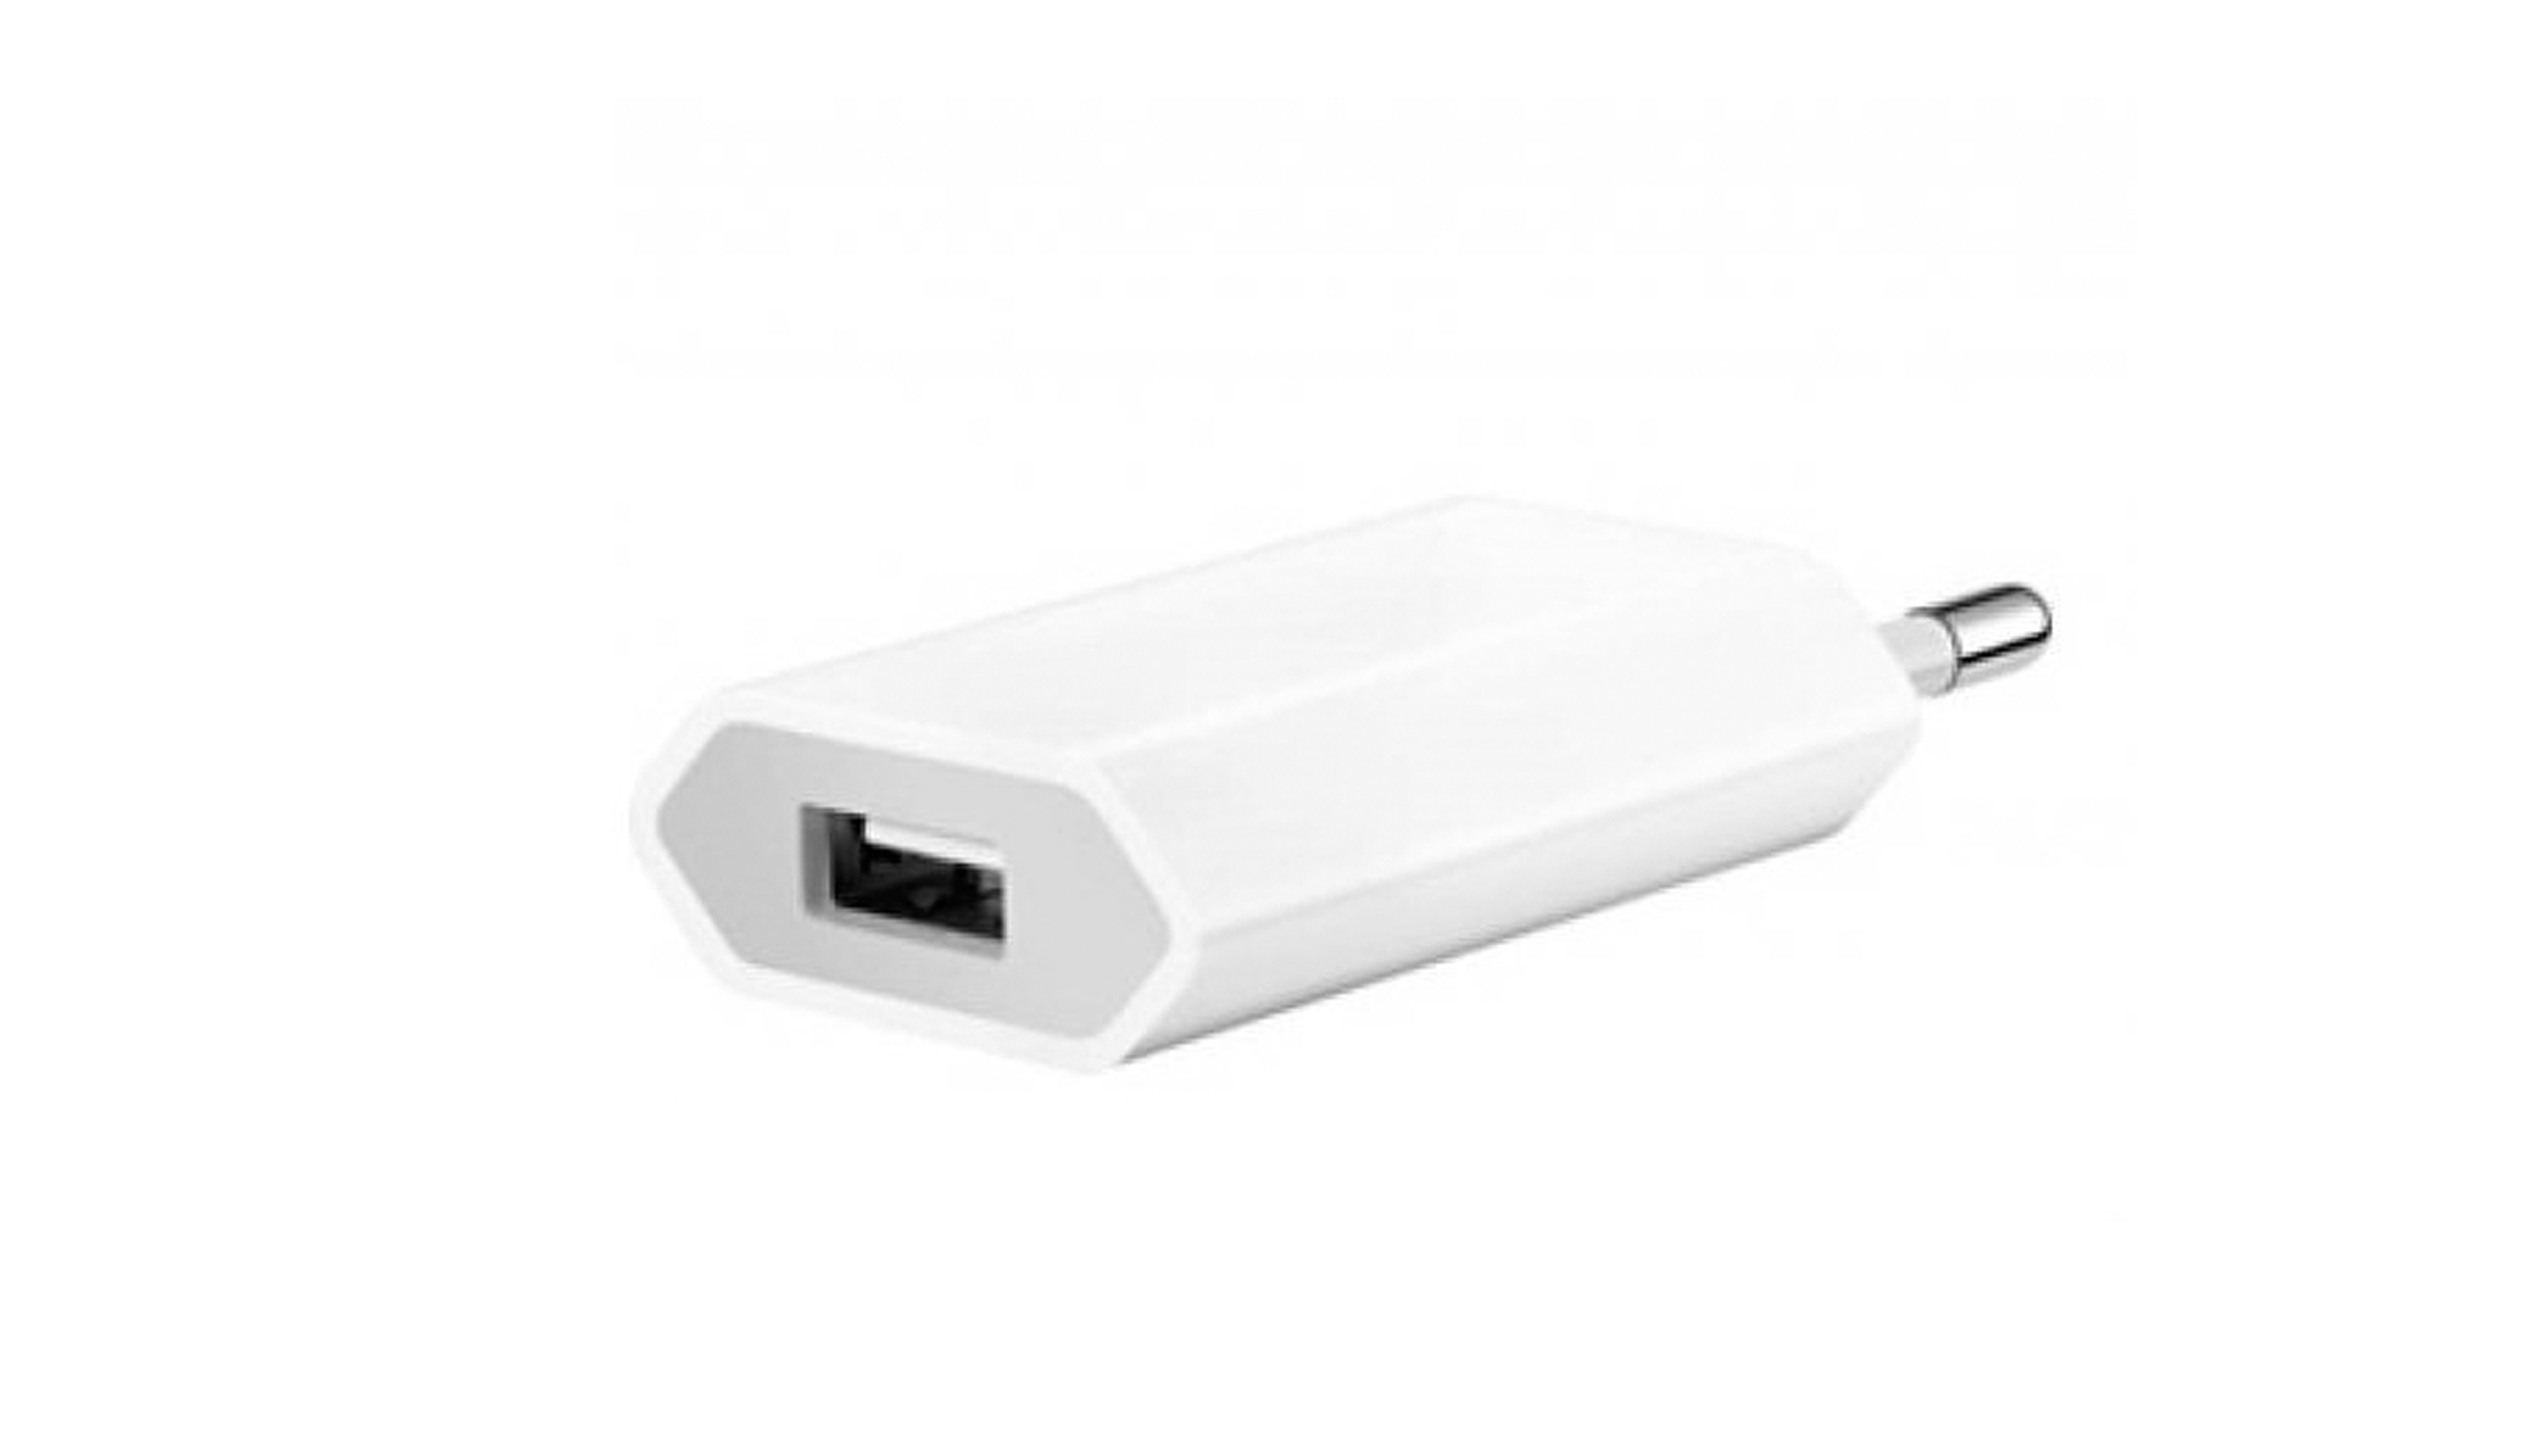 Купить зарядку эпл. Сетевое зарядное устройство Apple md813zm/a, 5 Вт. СЗУ USB Apple 5w. Сетевая зарядка Apple md813zm/a. Адаптер питания Apple USB 5w.